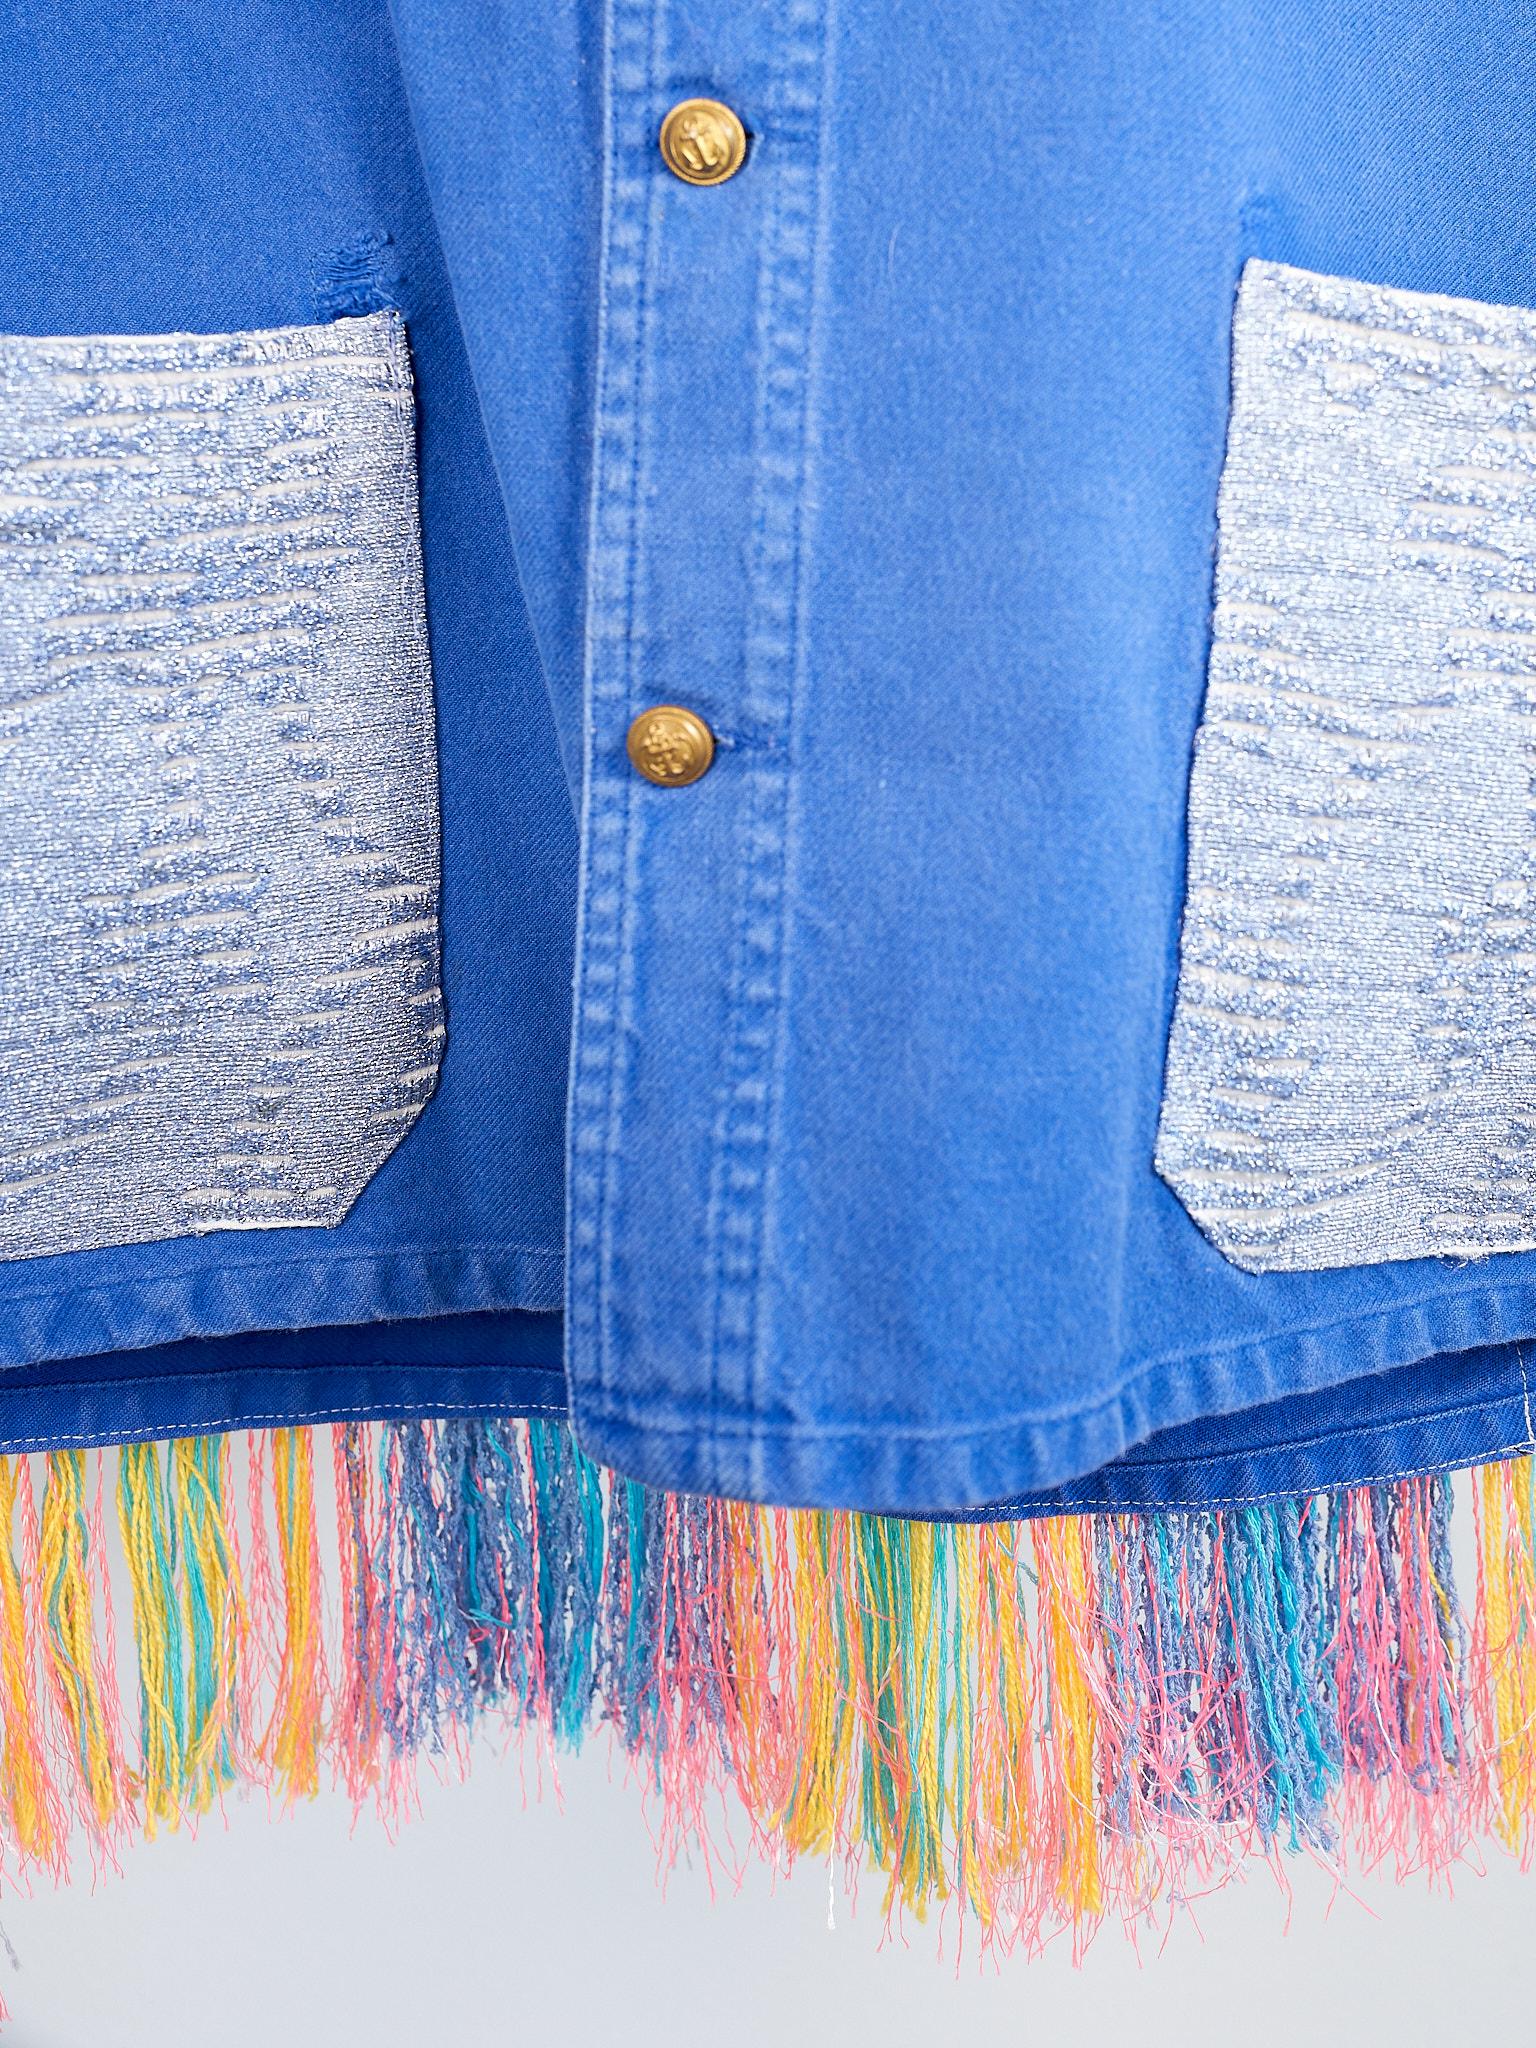 Cobalt Blue Jacket  Back Multi Color Pattern Fringes Glitter Pockets French Work 2